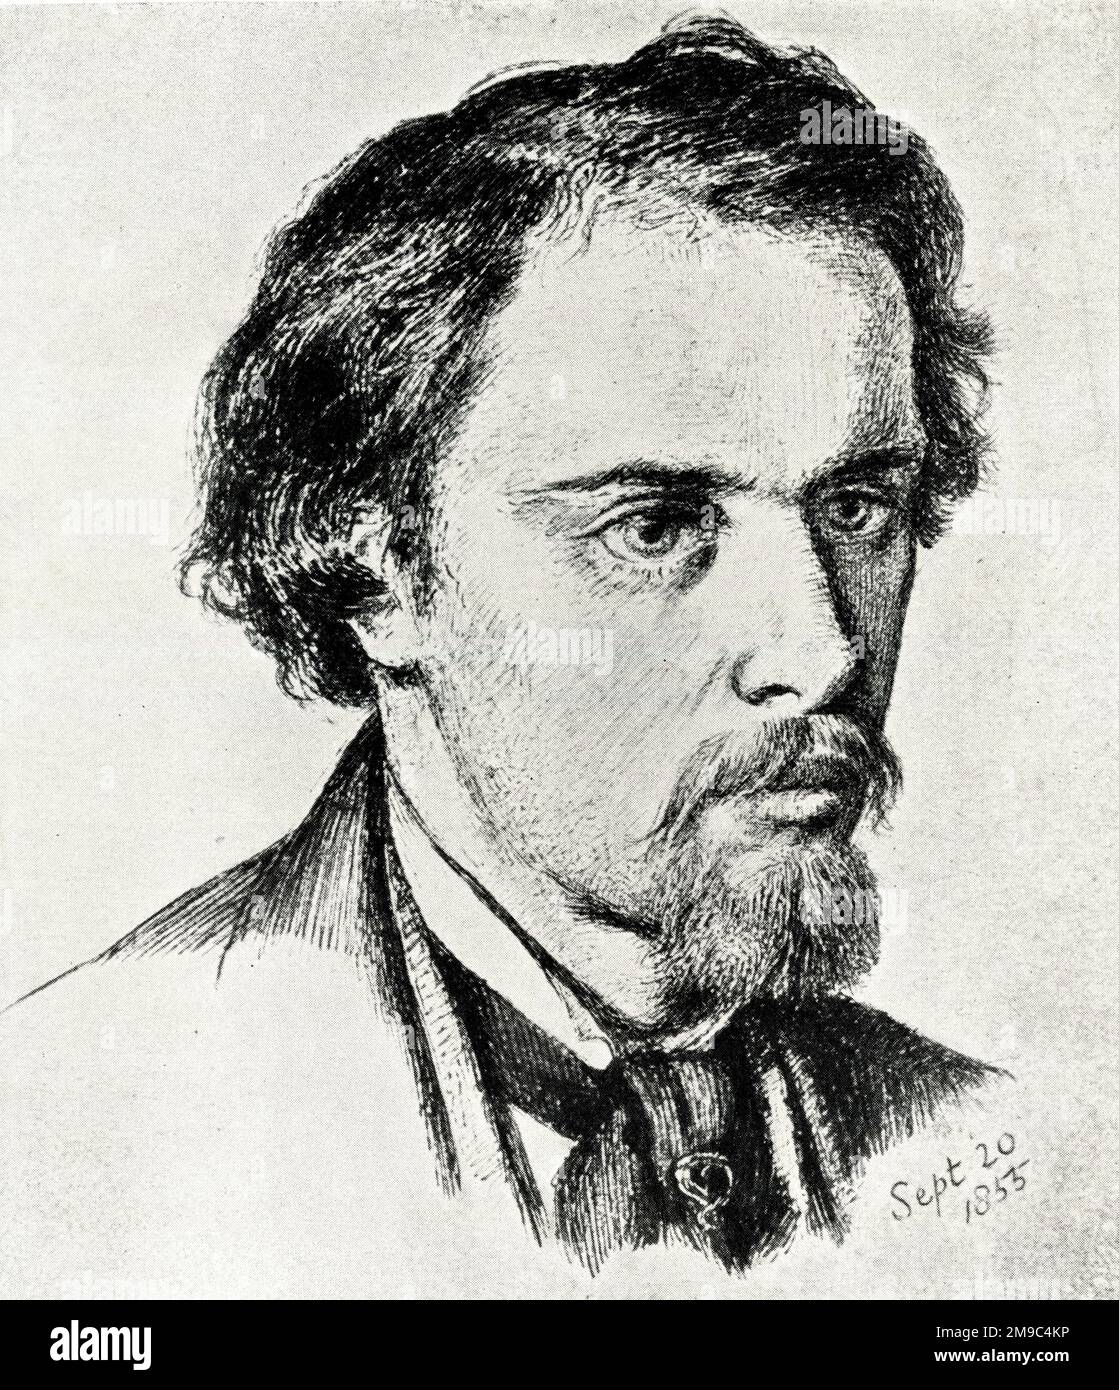 Dante Gabriel Rossetti, artiste pré-Raphaelite, autoportrait du 20 septembre 1855 Banque D'Images